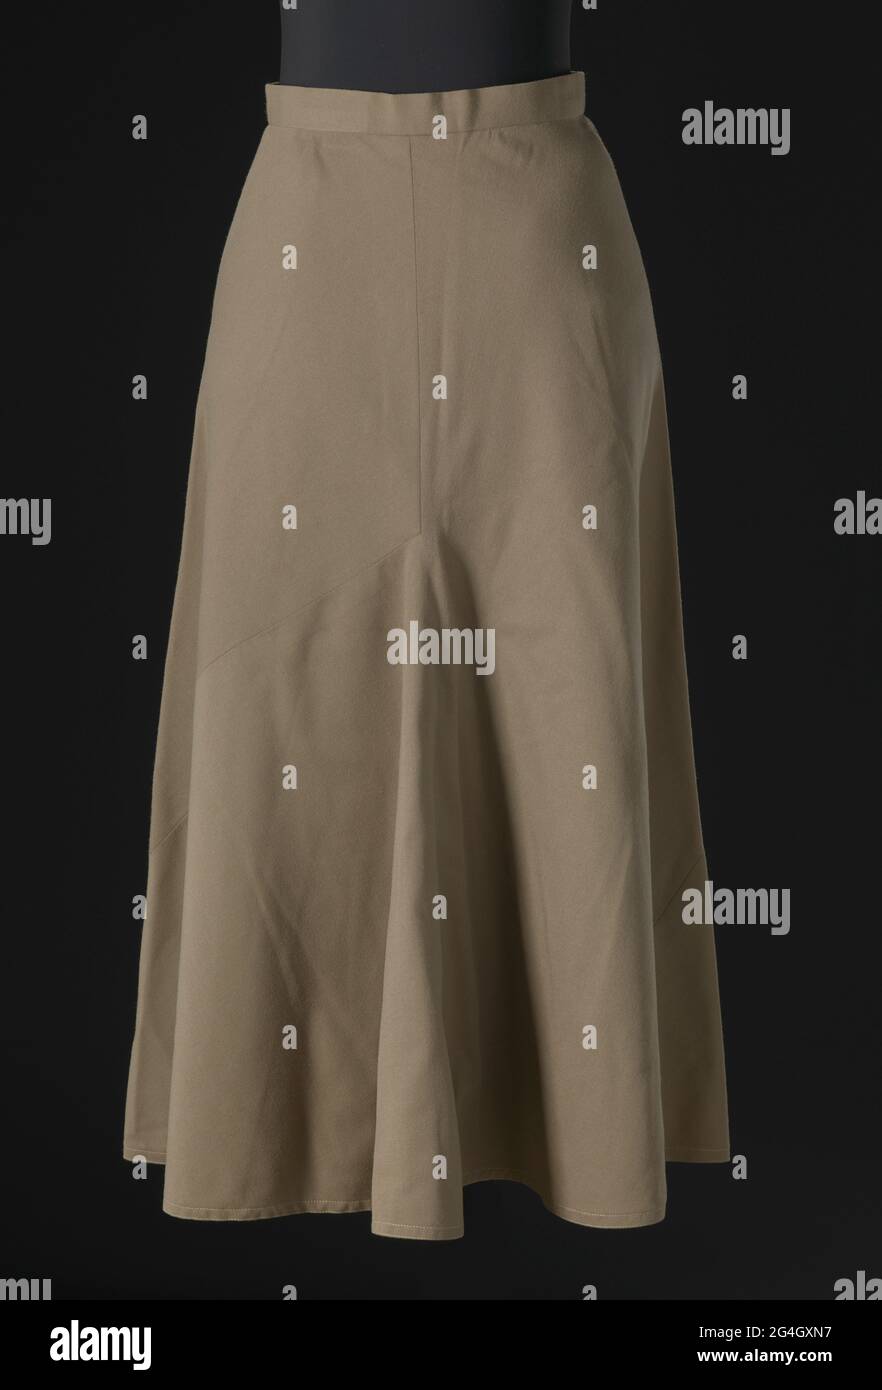 Falda de sarga de lana de color marrón diseñada por Arthur McGee. La falda  está hecha de dos (2) piezas de tela cortadas en la misma forma asimétrica y  cosidas, con las